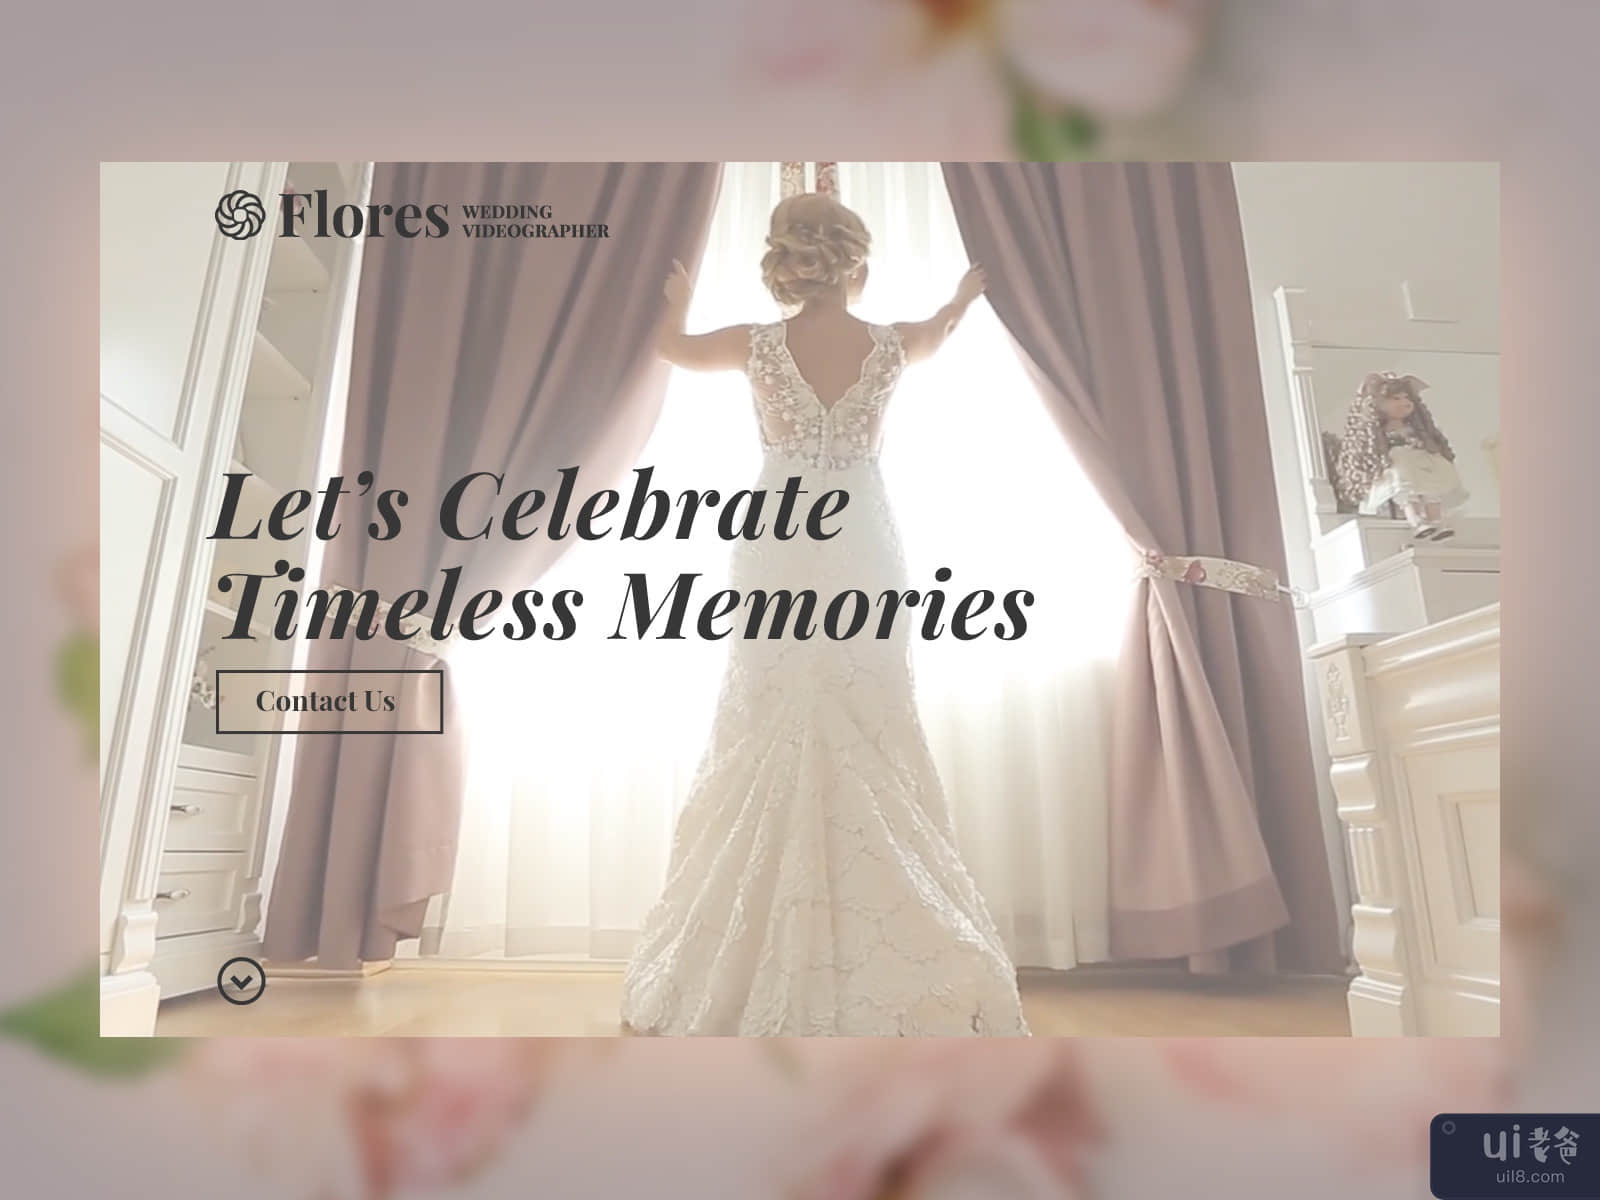 弗洛雷斯。婚礼摄像网站(Flores. Wedding Videography Website)插图